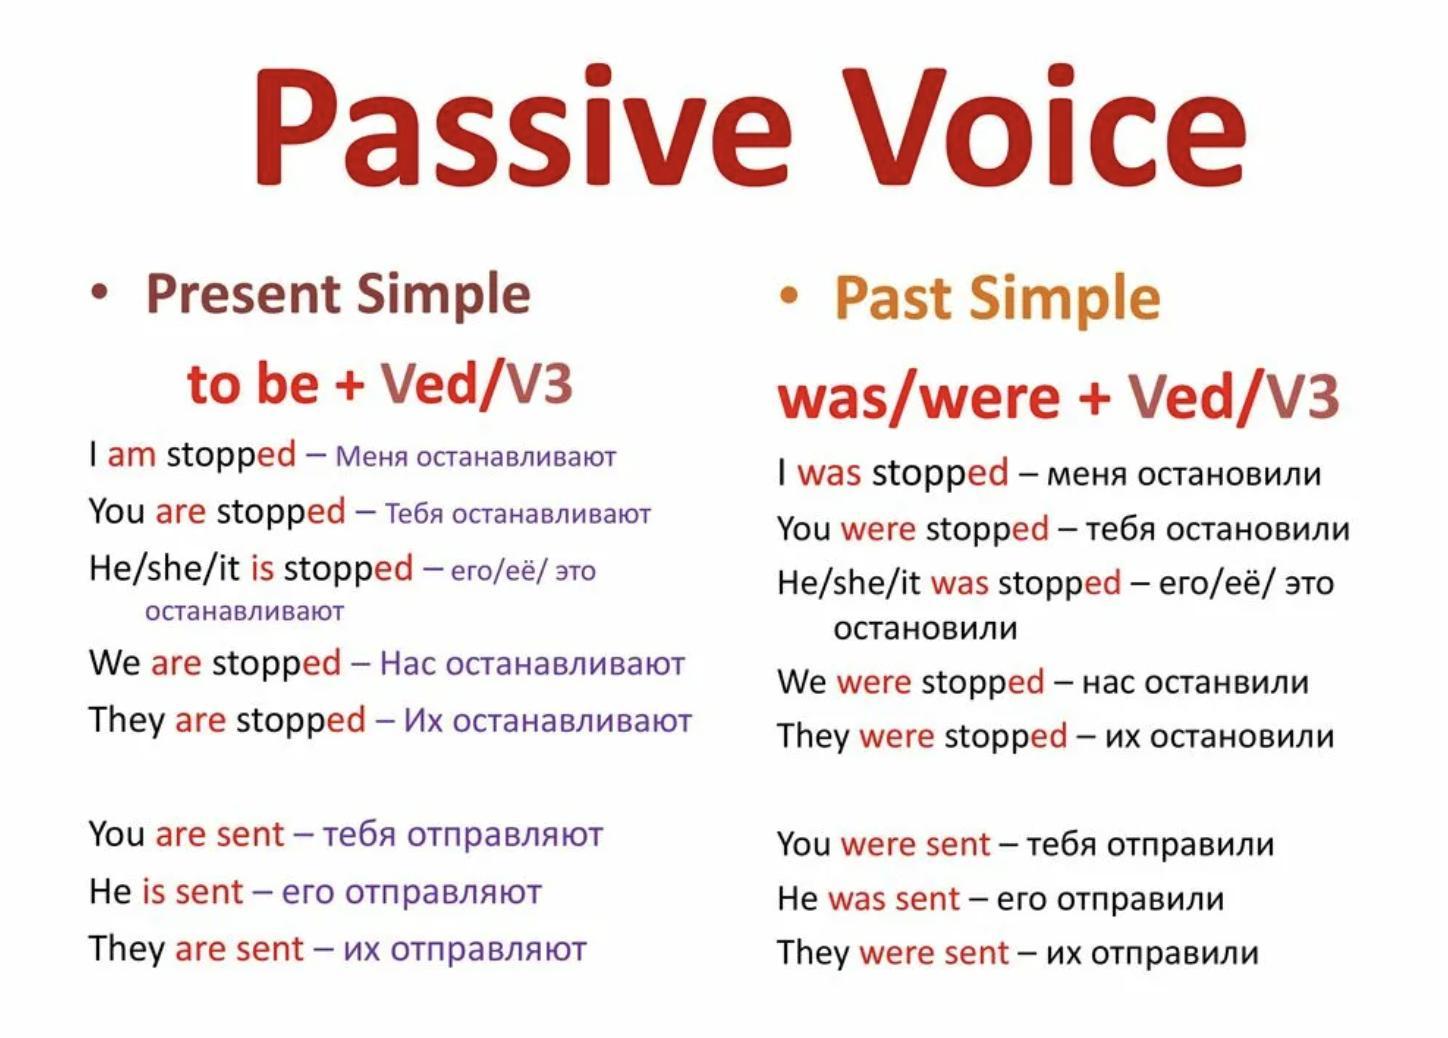 Present simple passive speak